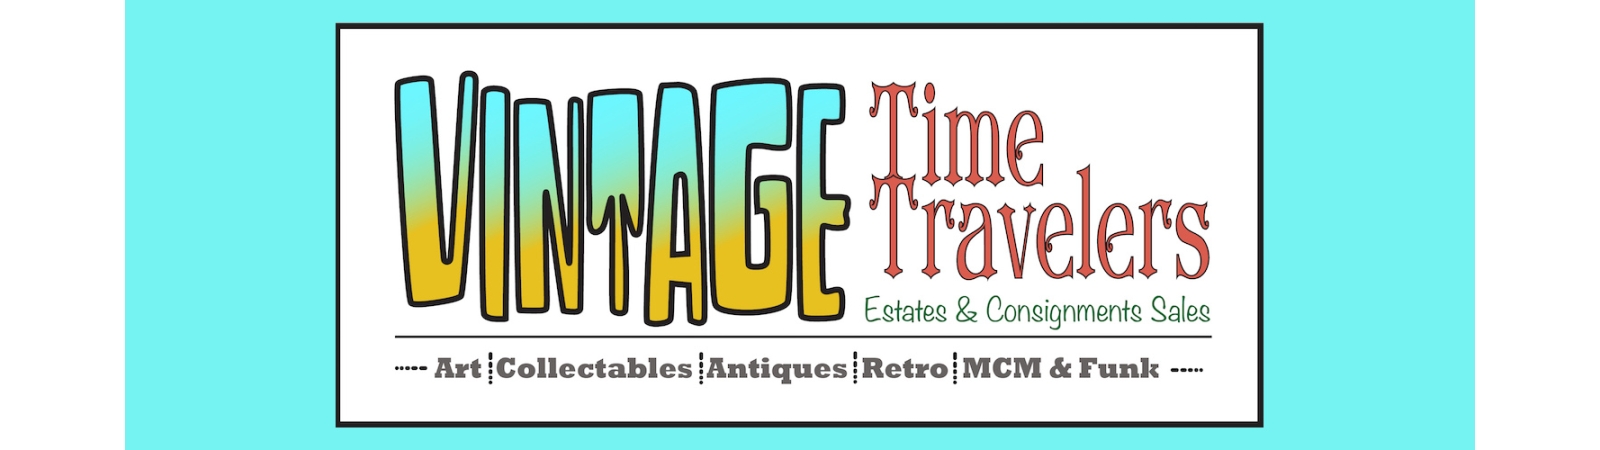 Vintage Time Travelers | Auction Ninja